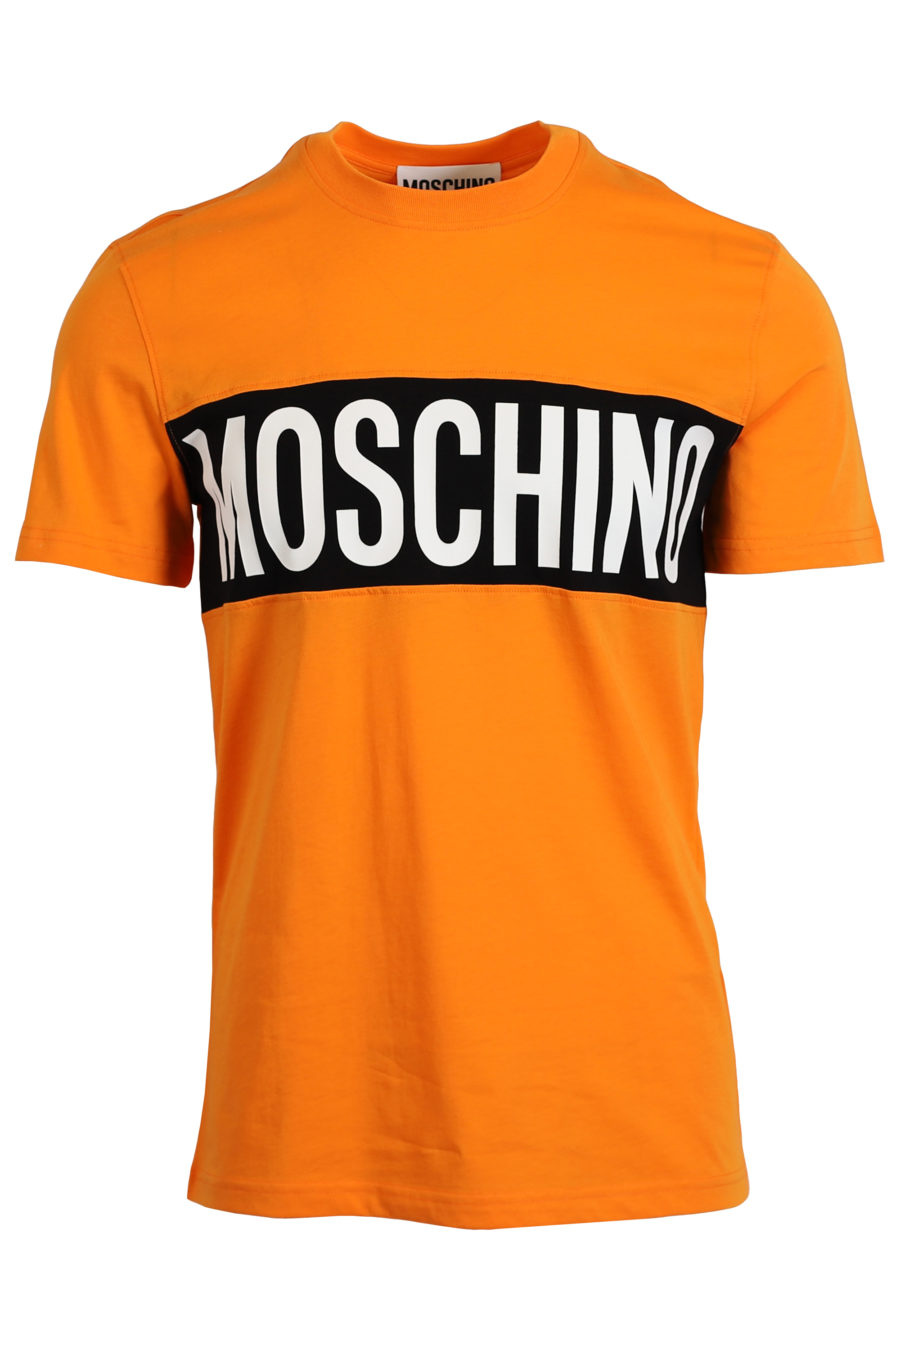 T-shirt orange logo schwarz und weiß - IMG 0985